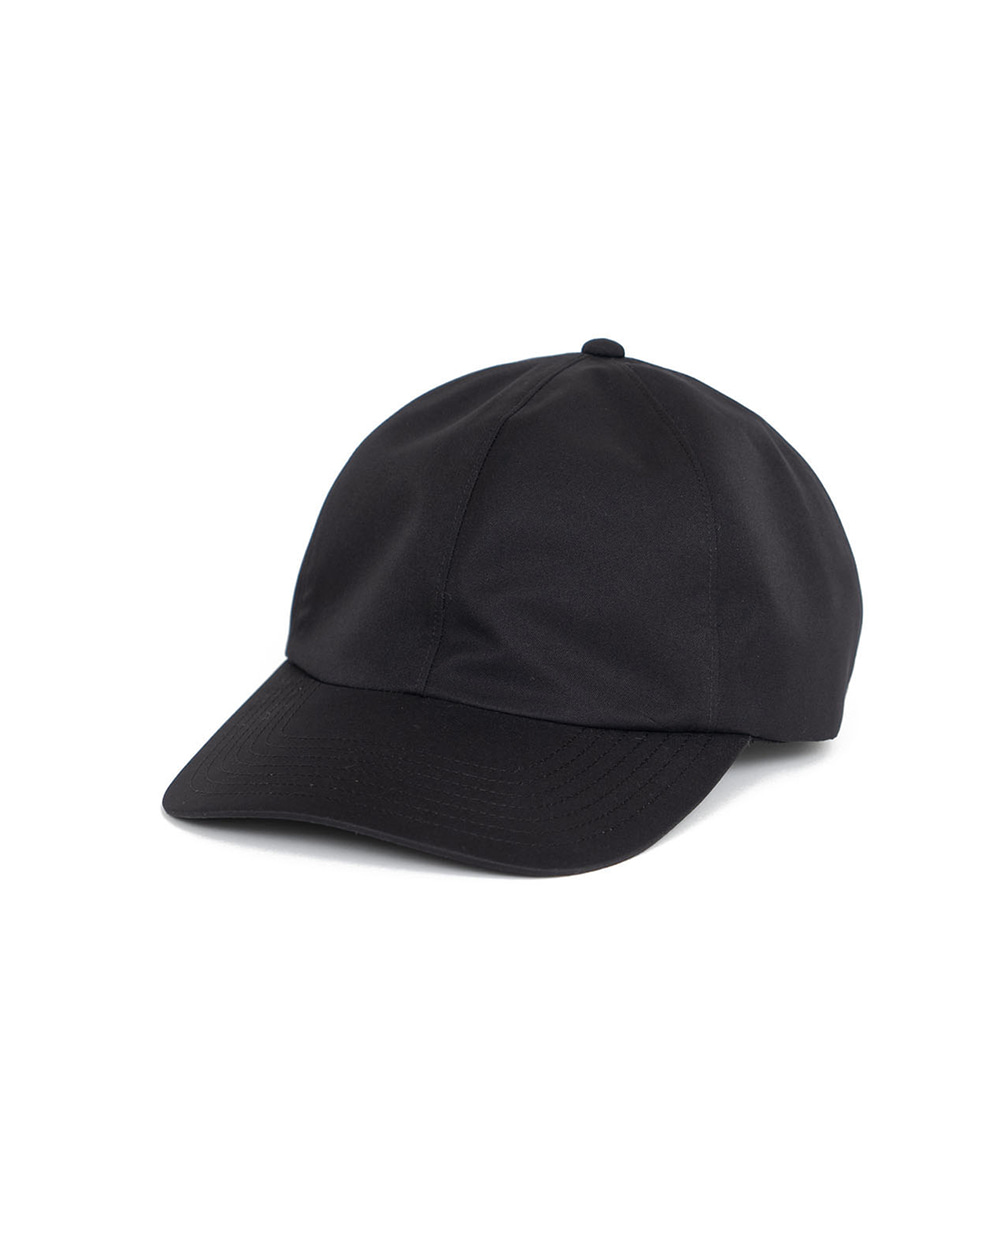 2L GORE-TEX Cap (Black)